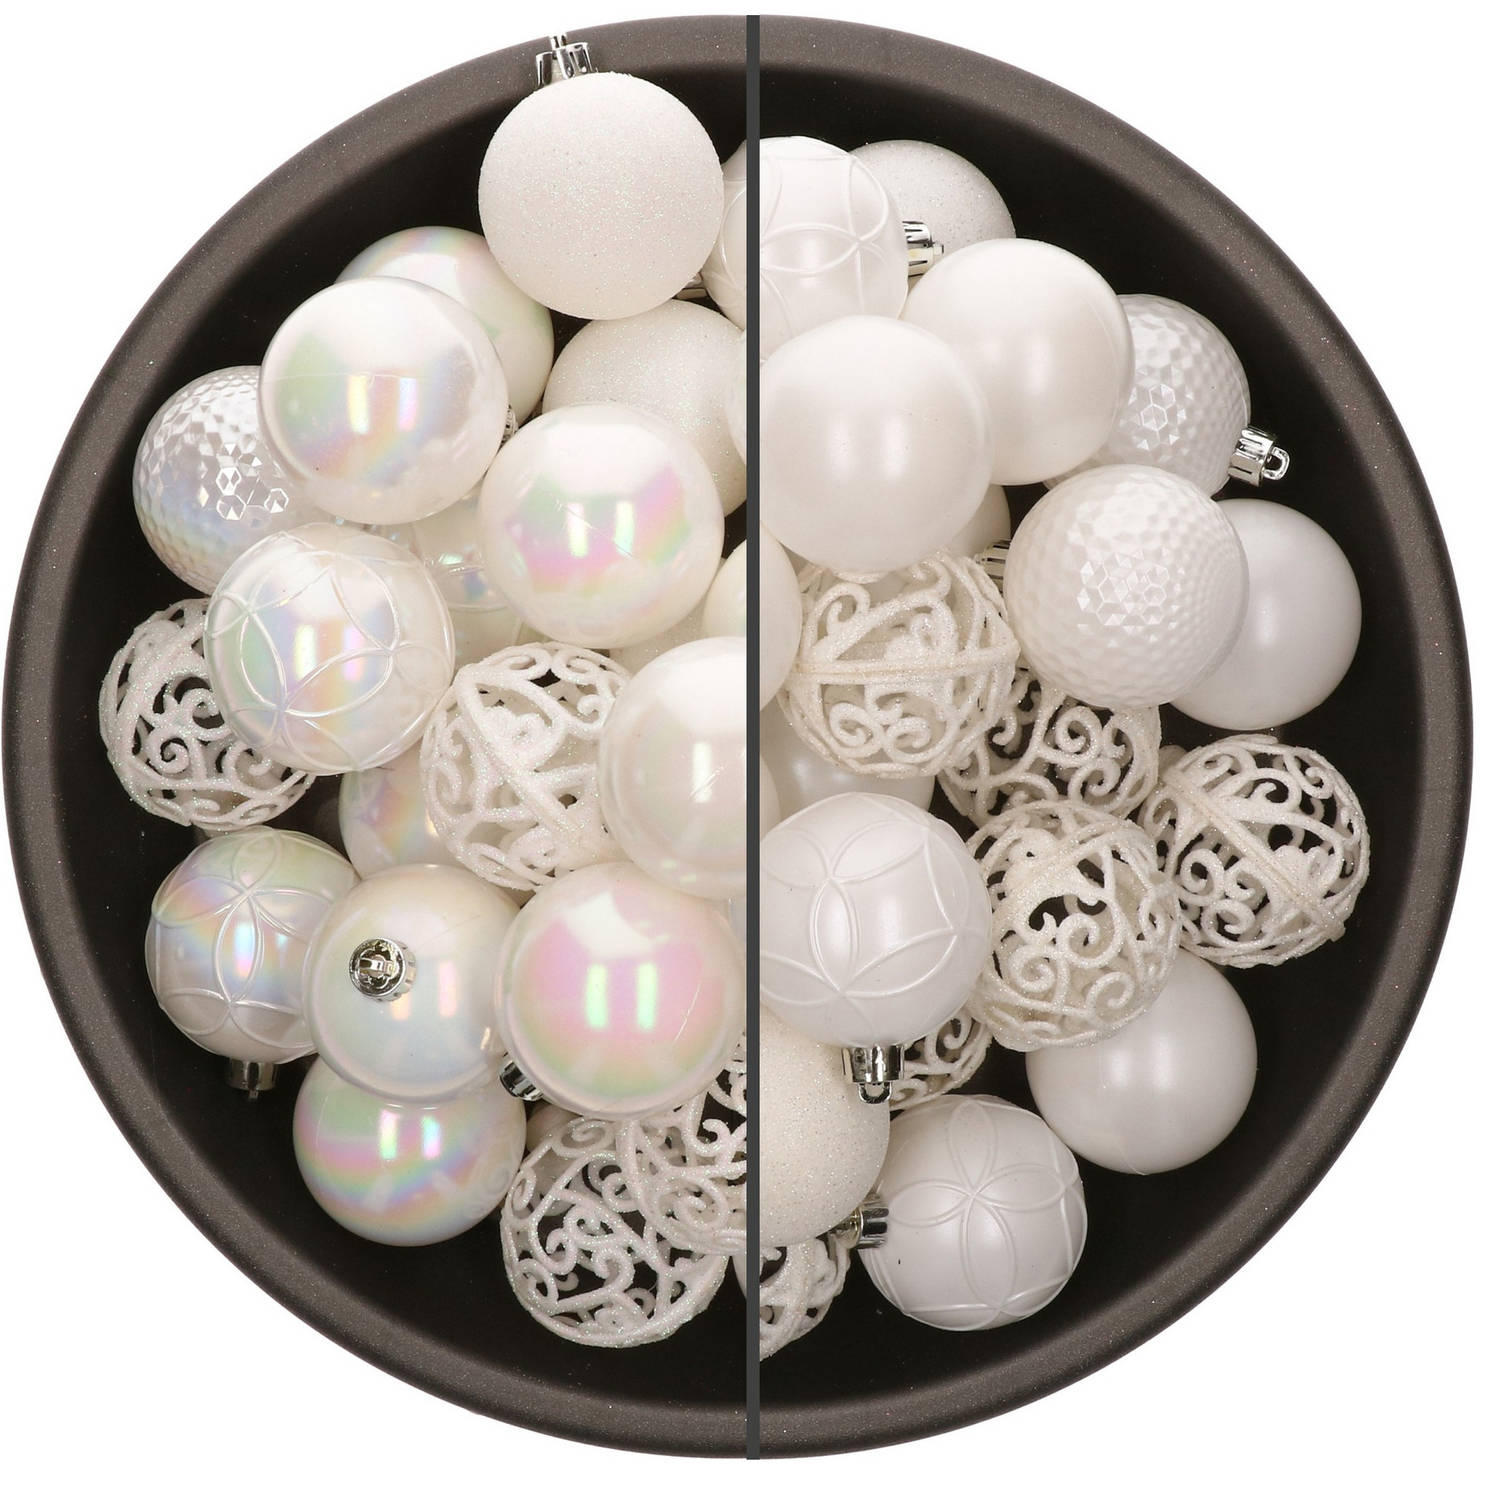 74x stuks kunststof kerstballen mix van parelmoer wit en wit 6 cm - Kerstbal